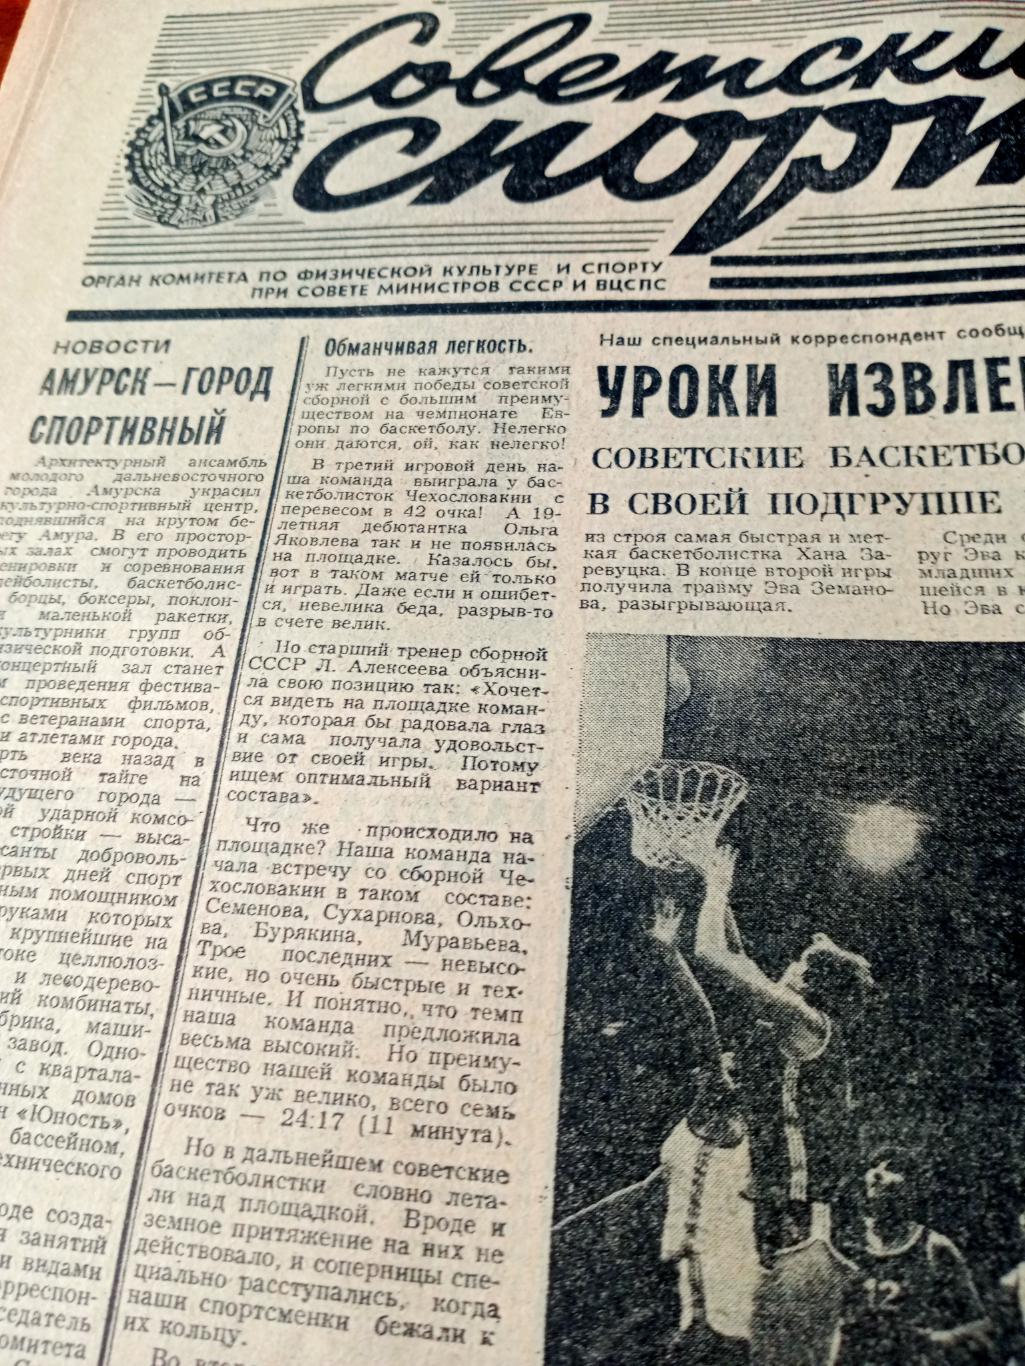 Еврокубки. Советский спорт. 1983 год. 15 сентября